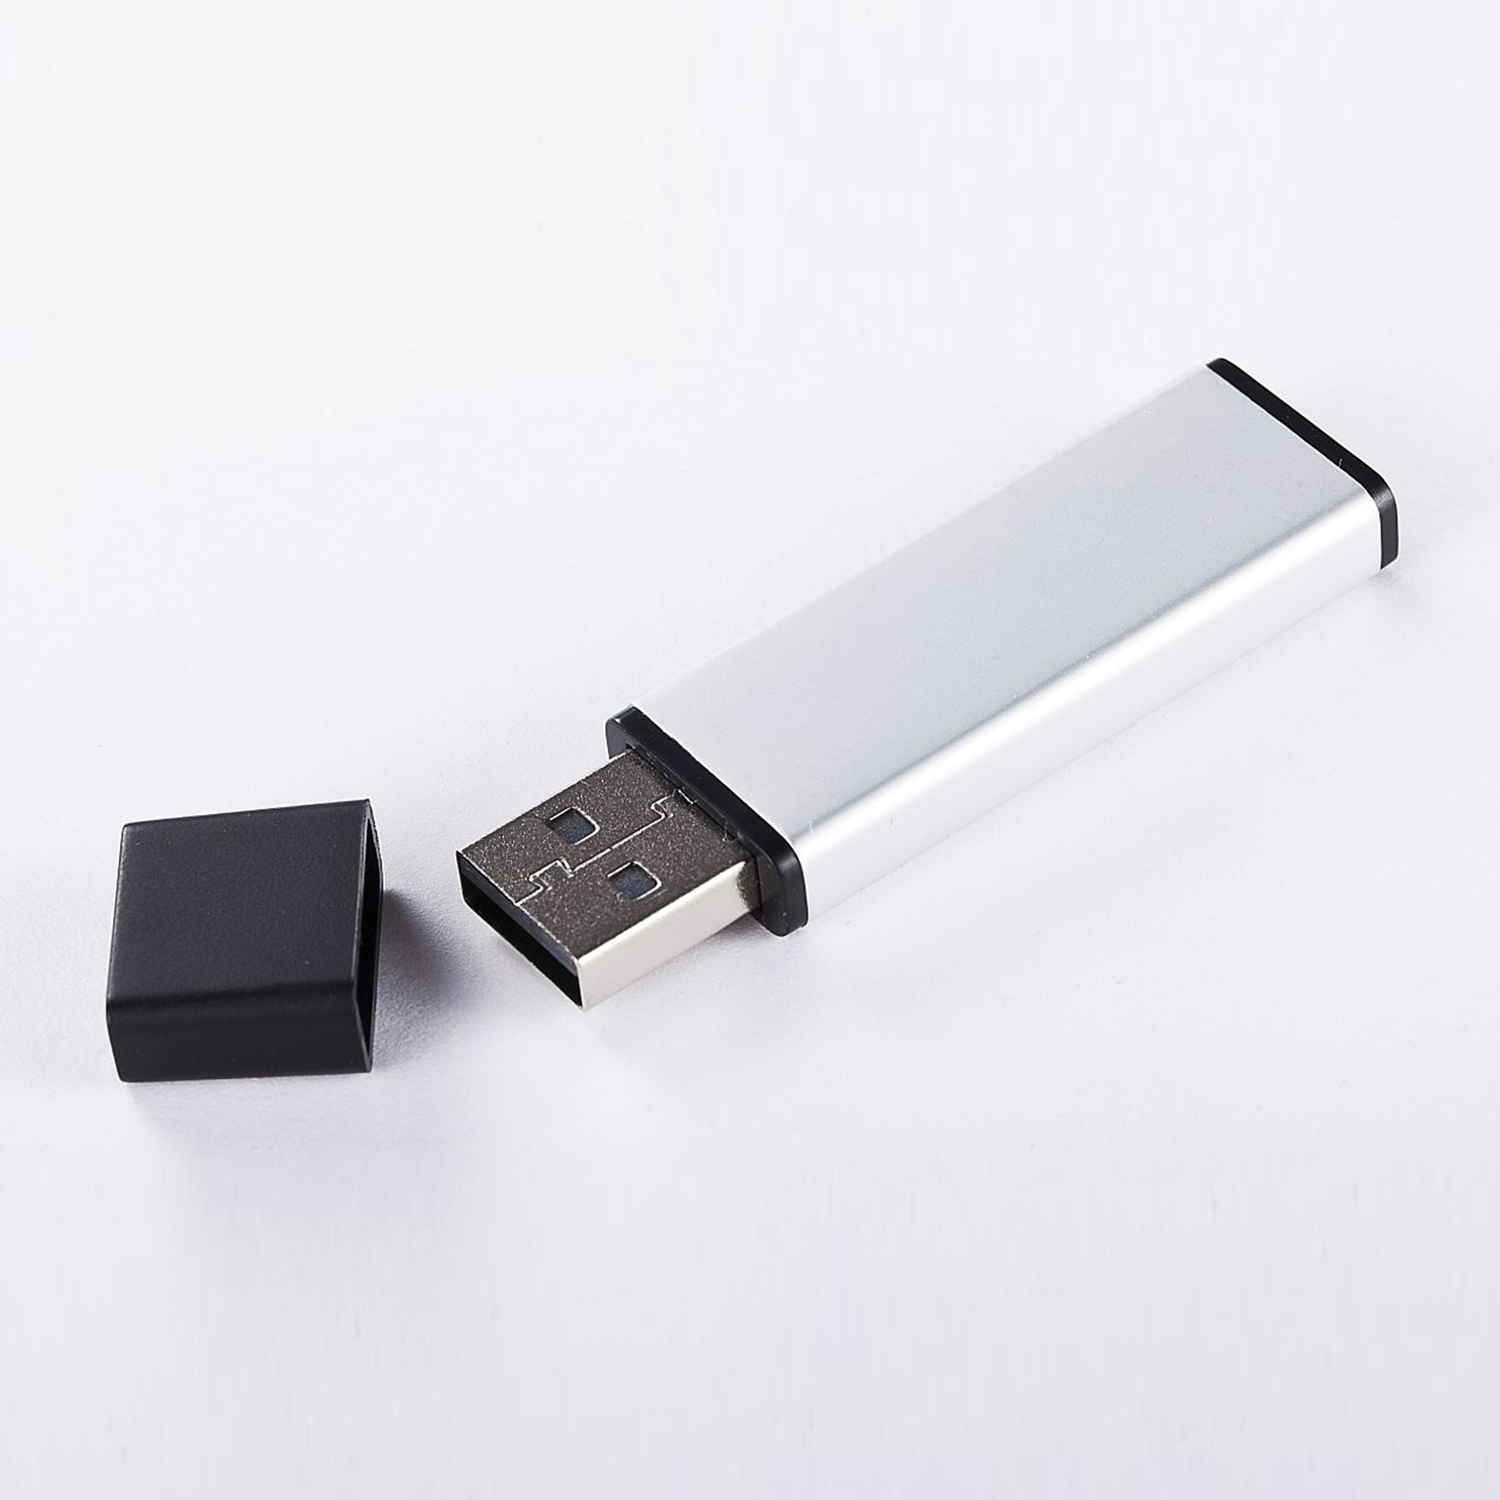 2.0 (ALUMINIUM, XLYNE GB) GB USB 8 Stick - USB 8